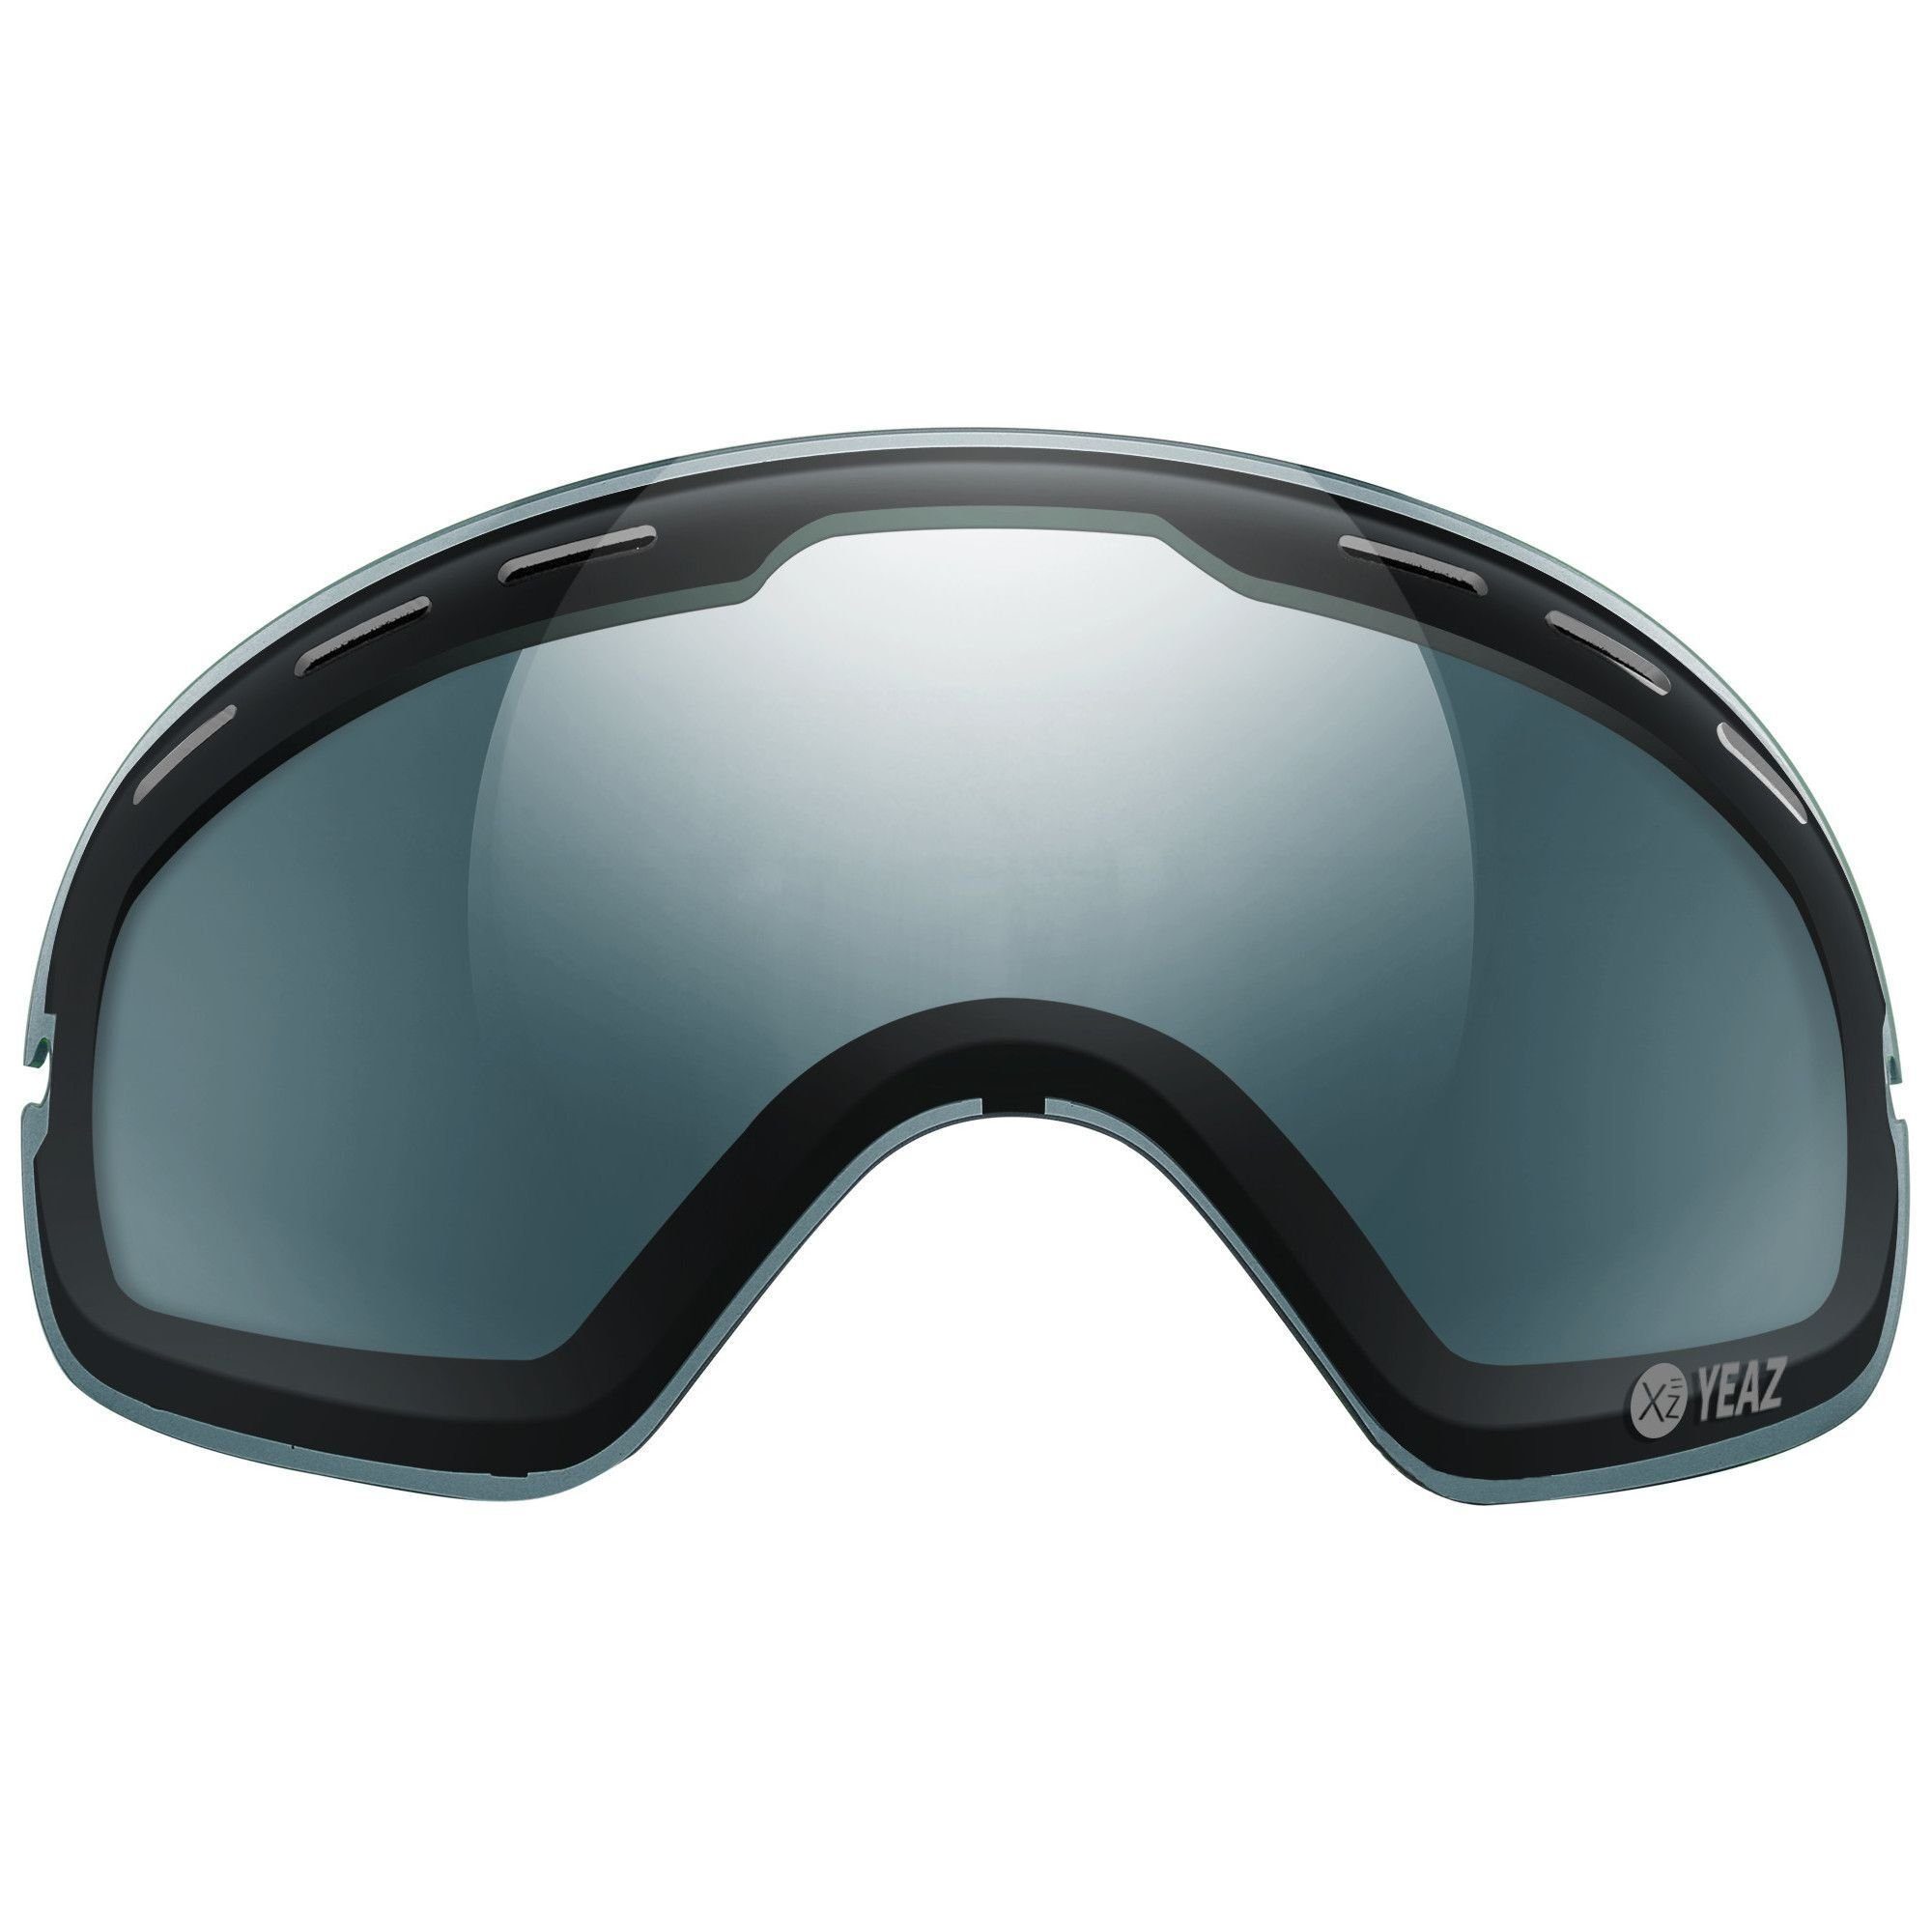 YEAZ Skibrille XTRM-SUMMIT polarisiertes wechselglas, mit rahmen, Wechselglas für XTRM-SUMMIT mit Rahmen Skibrille